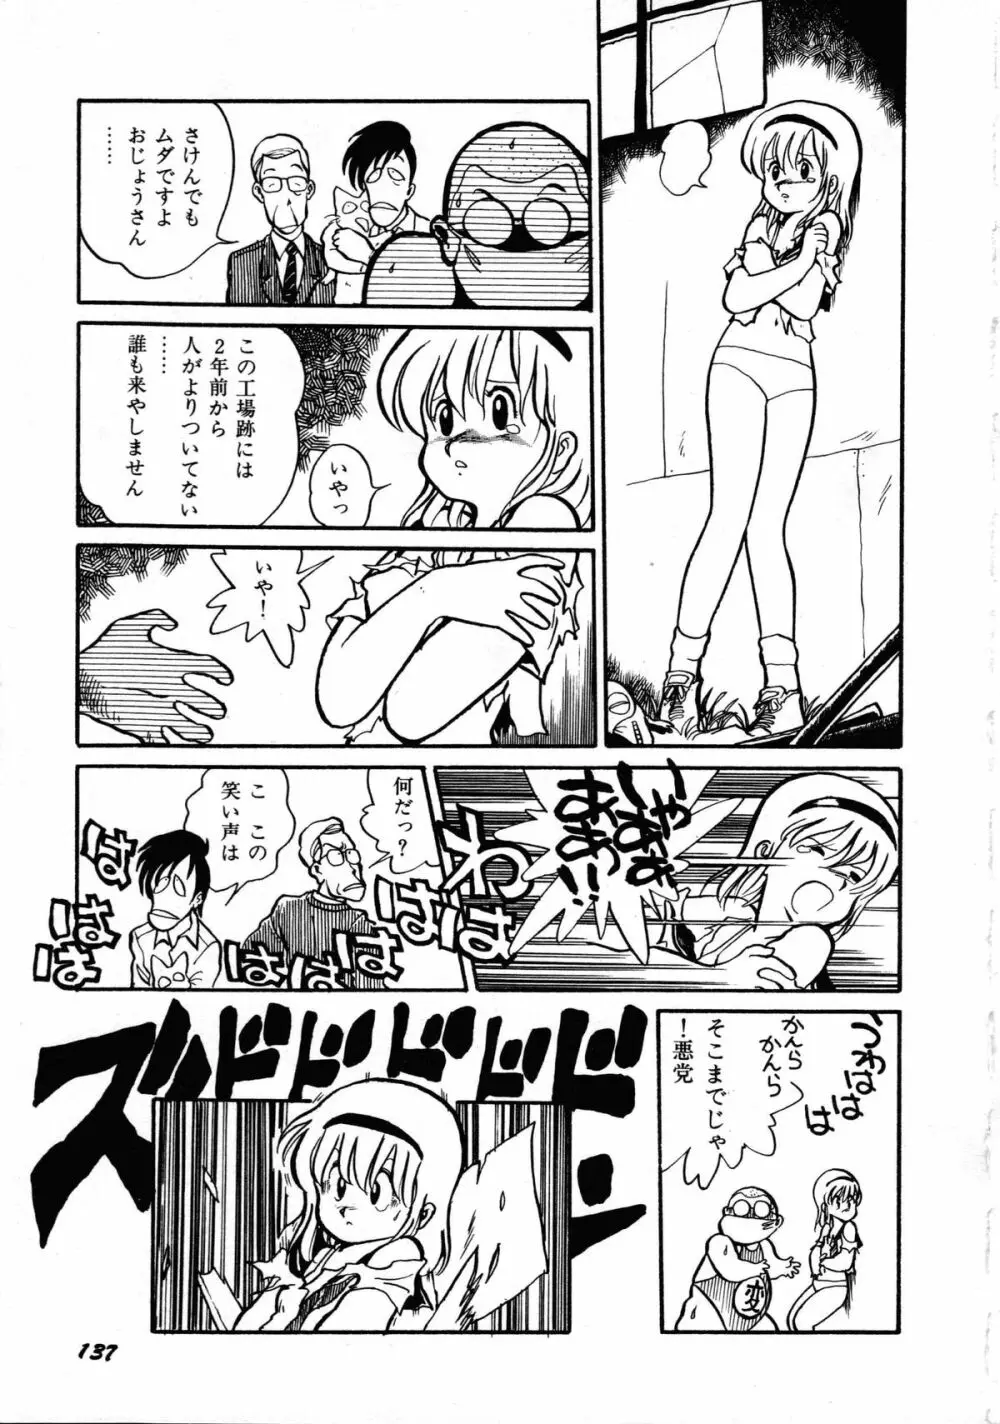 ロボット&美少女傑作選 レモン・ピープル1982-1986 141ページ